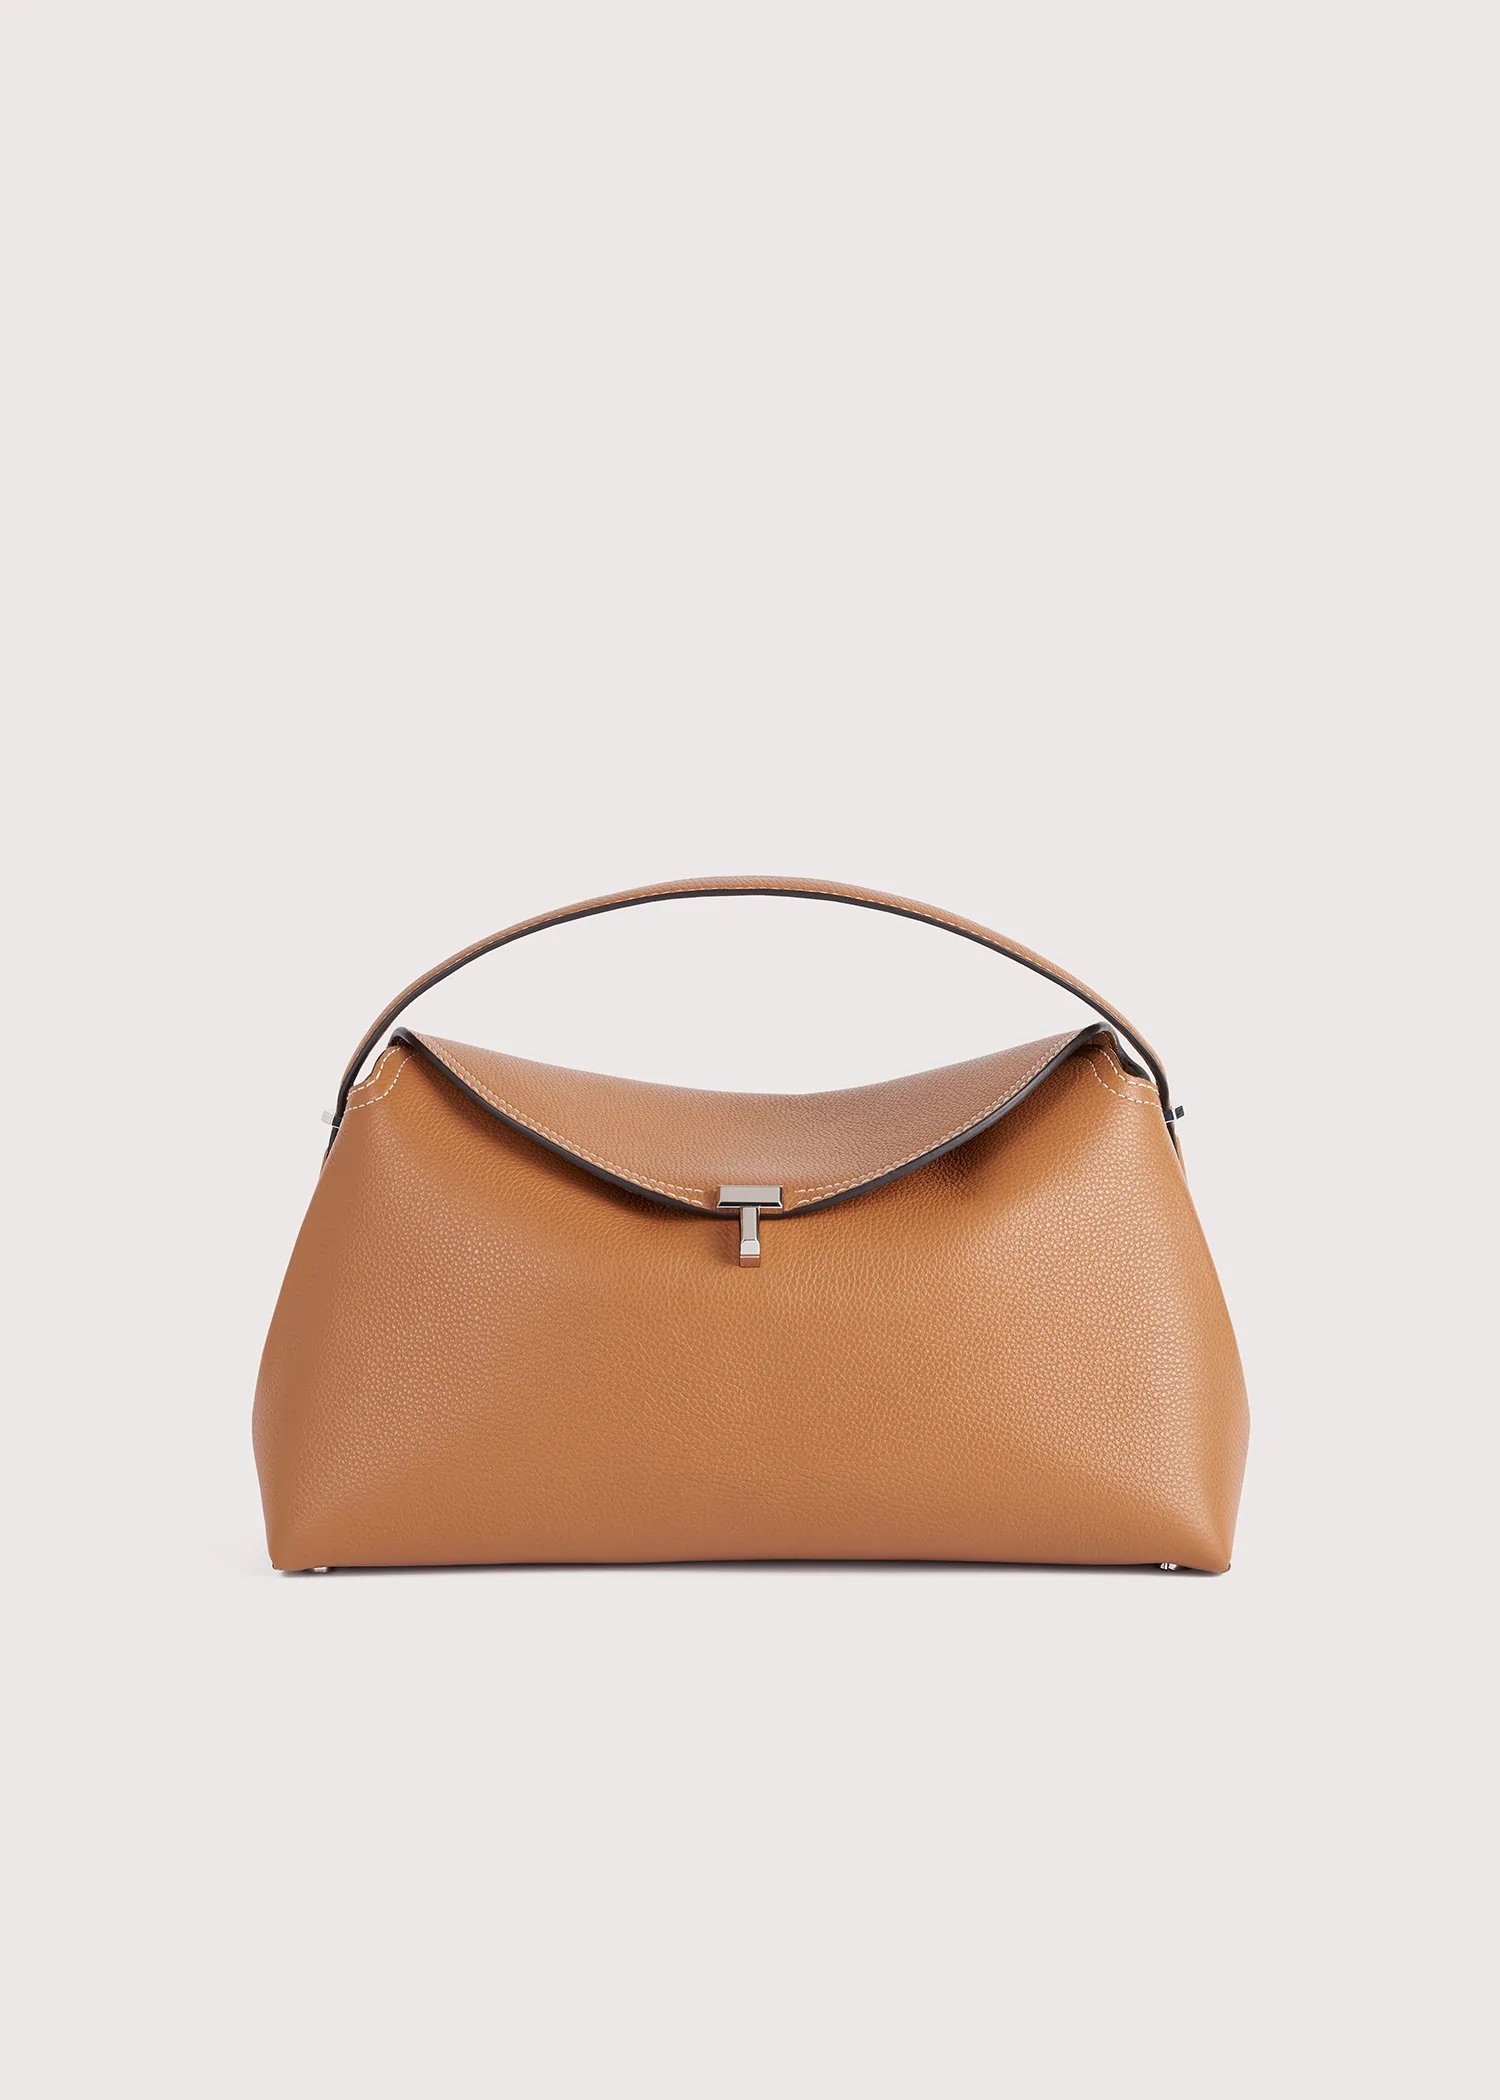 Top 10 Low-Key Luxury Bags - luxfy